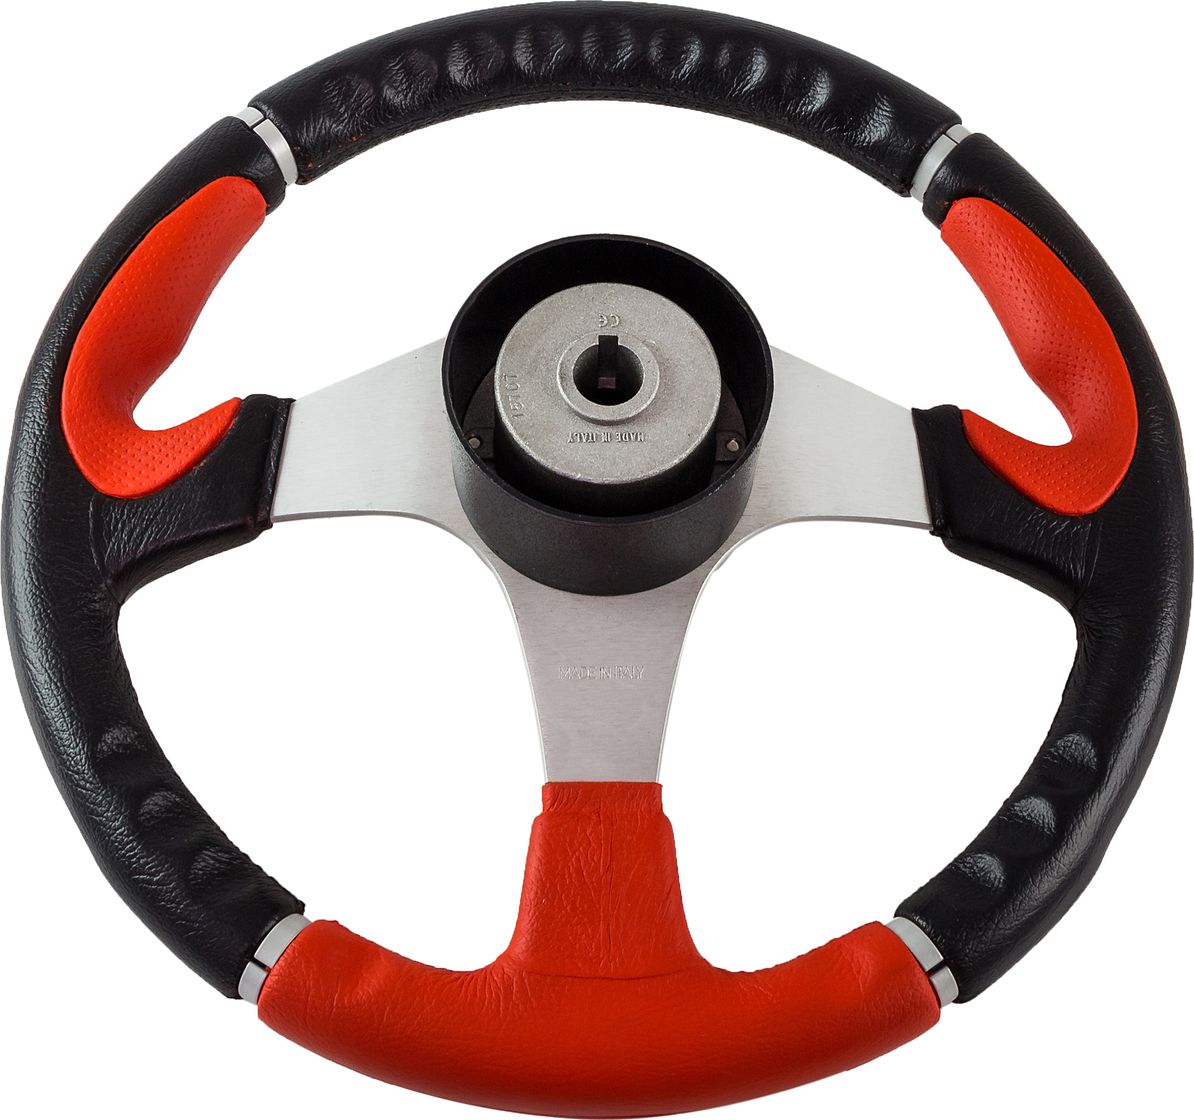 Рулевое колесо ORION обод чернокрасный, спицы серебряные д. 355 мм VN960101-95 - фото 2